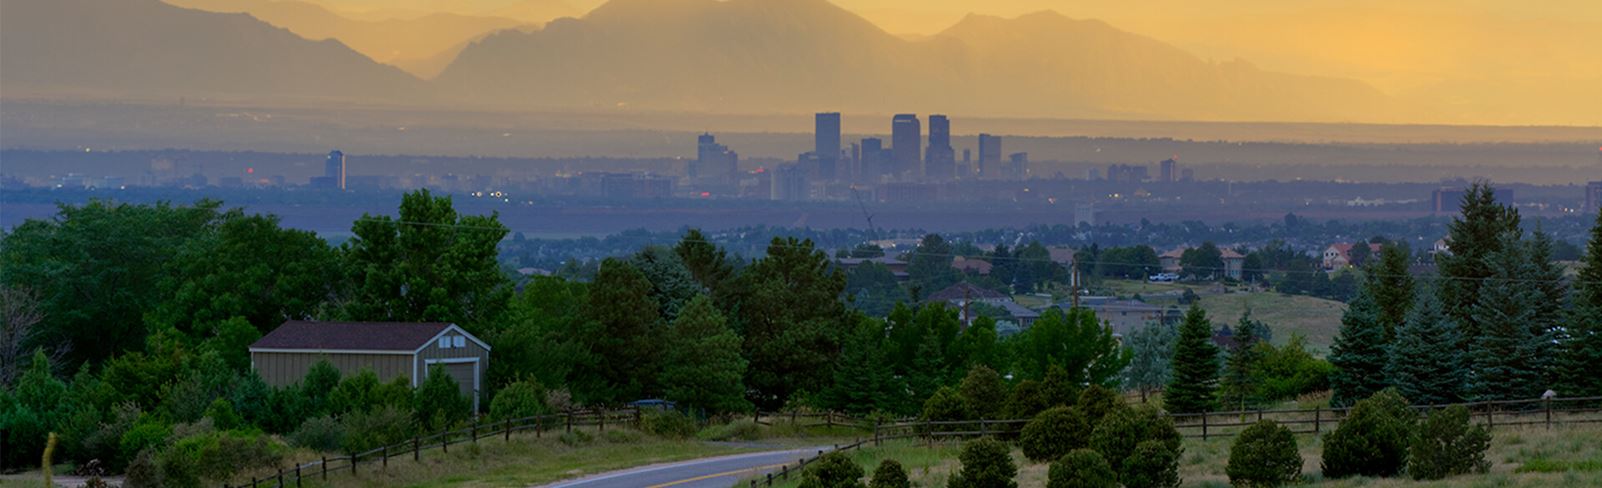 View of Denver from Inspiration Colorado, a new home development Near Denver